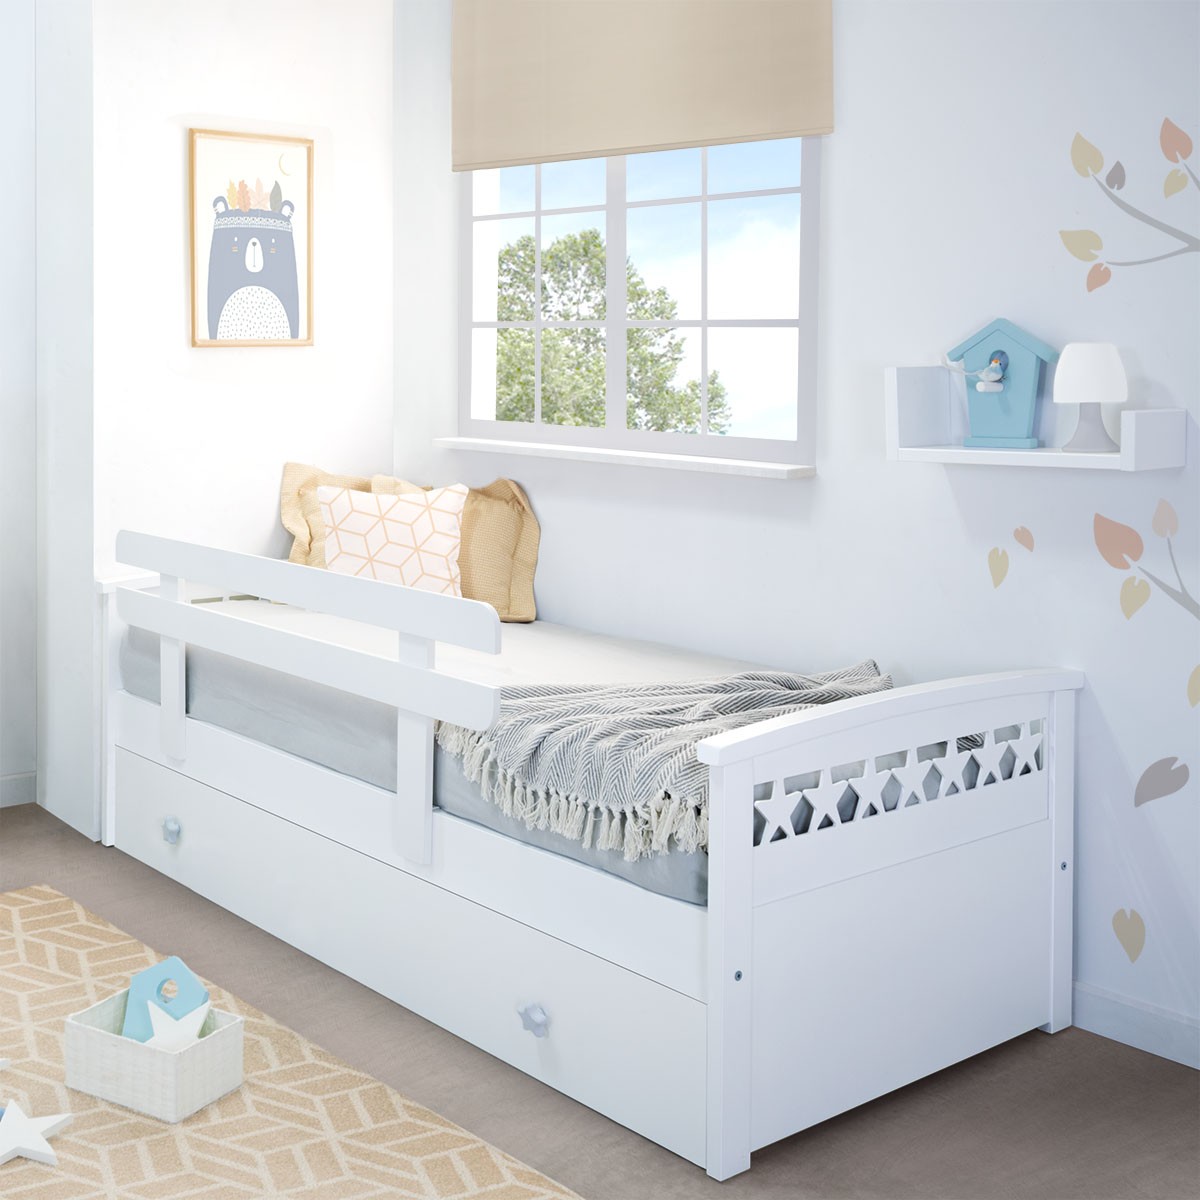 UISEBRT 2 barreras de protección para cama infantil para cama familiar y cama infantil altura regulable protección anticaídas 5 agujeros 100 cm, gris lino 50 cm 